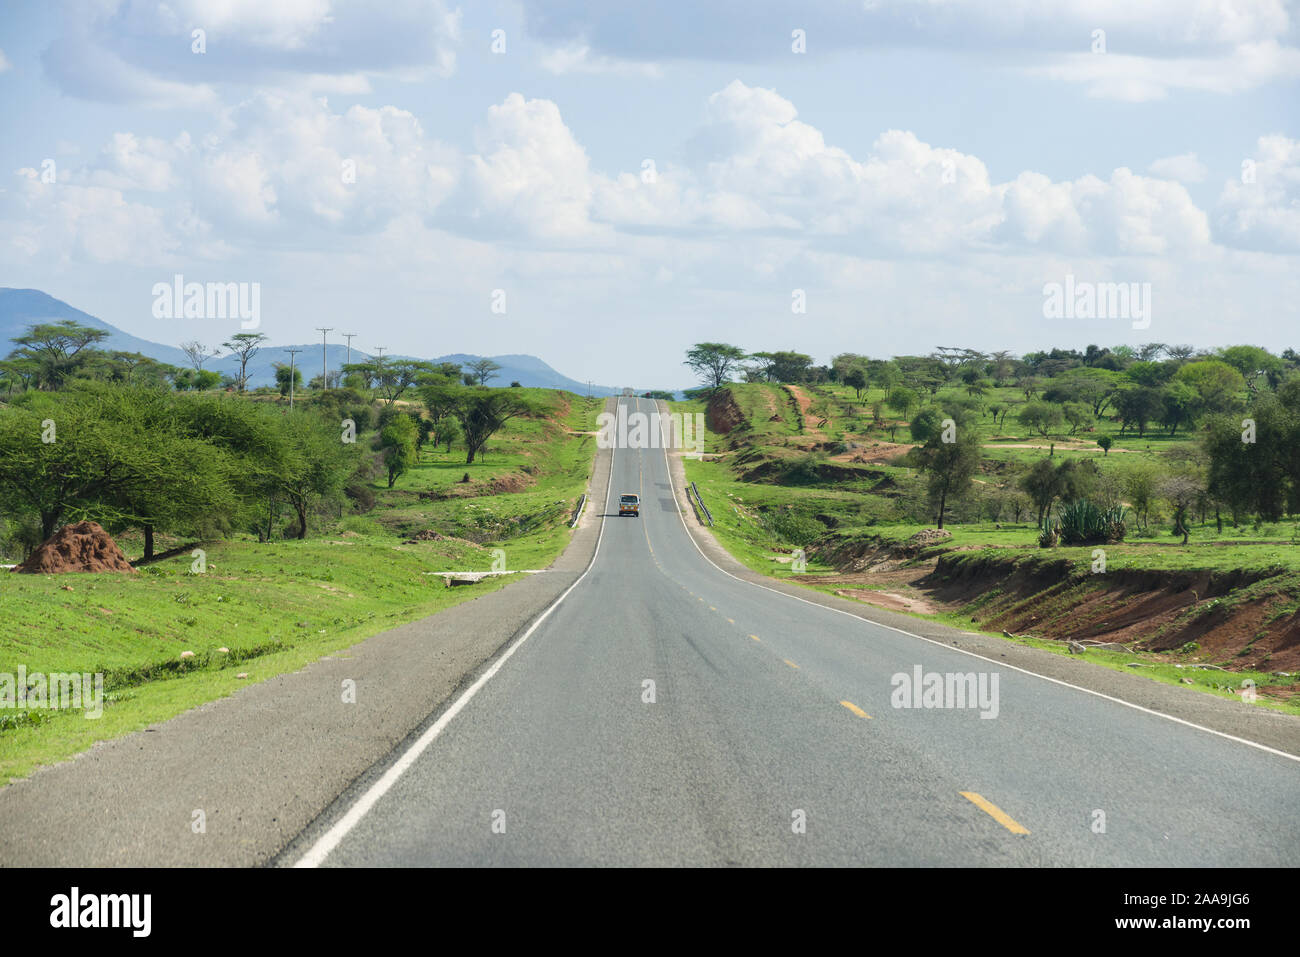 A section of Namanga Road towards Tanzania lined with trees, Kenya Stock Photo